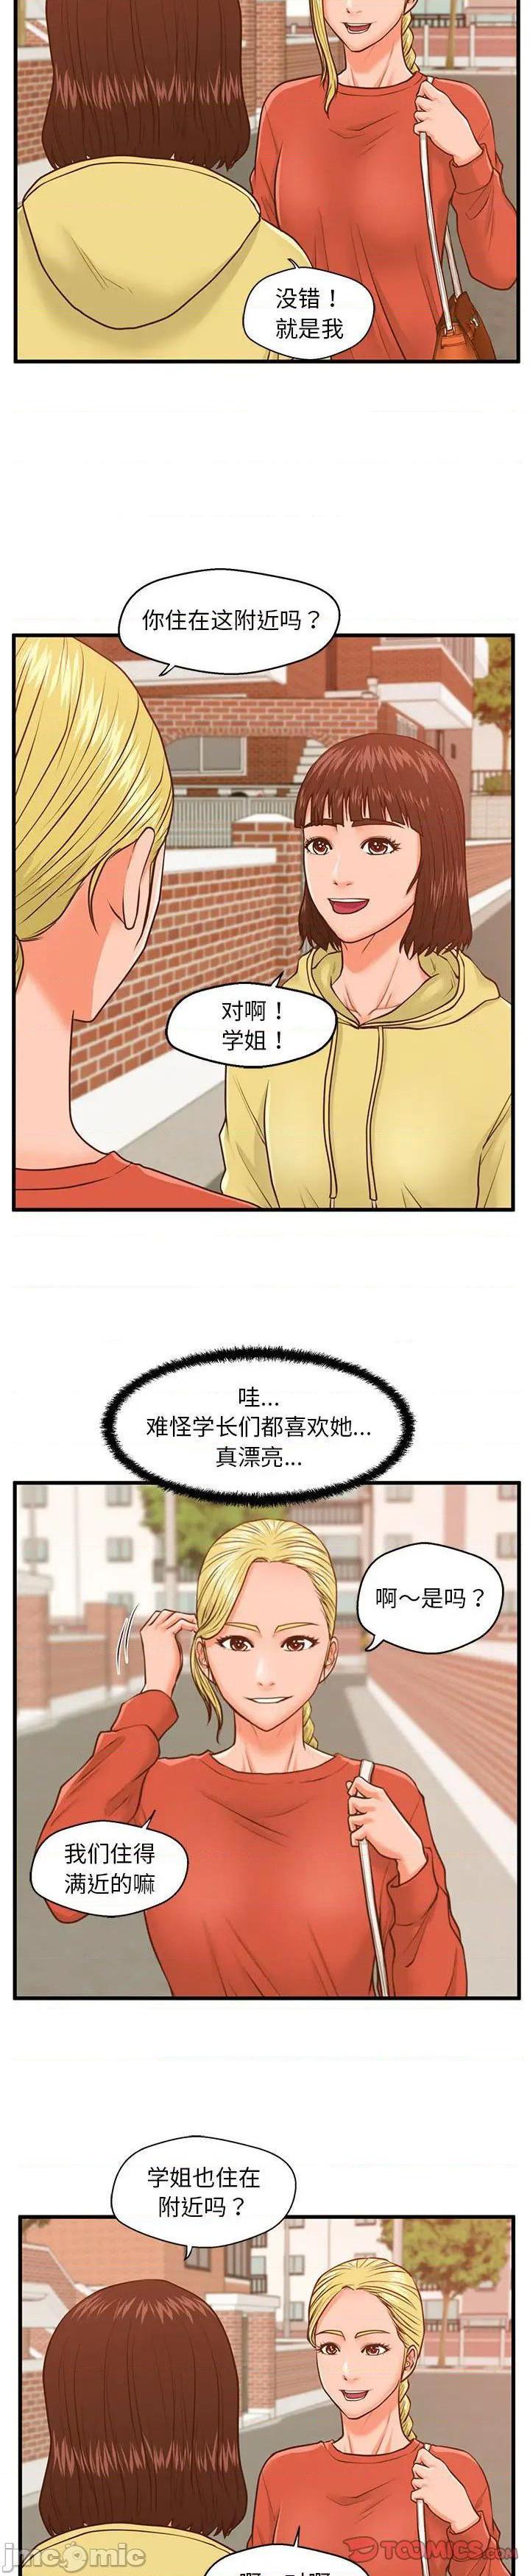 《诚徵女房客(甜蜜合租)》漫画 第11话